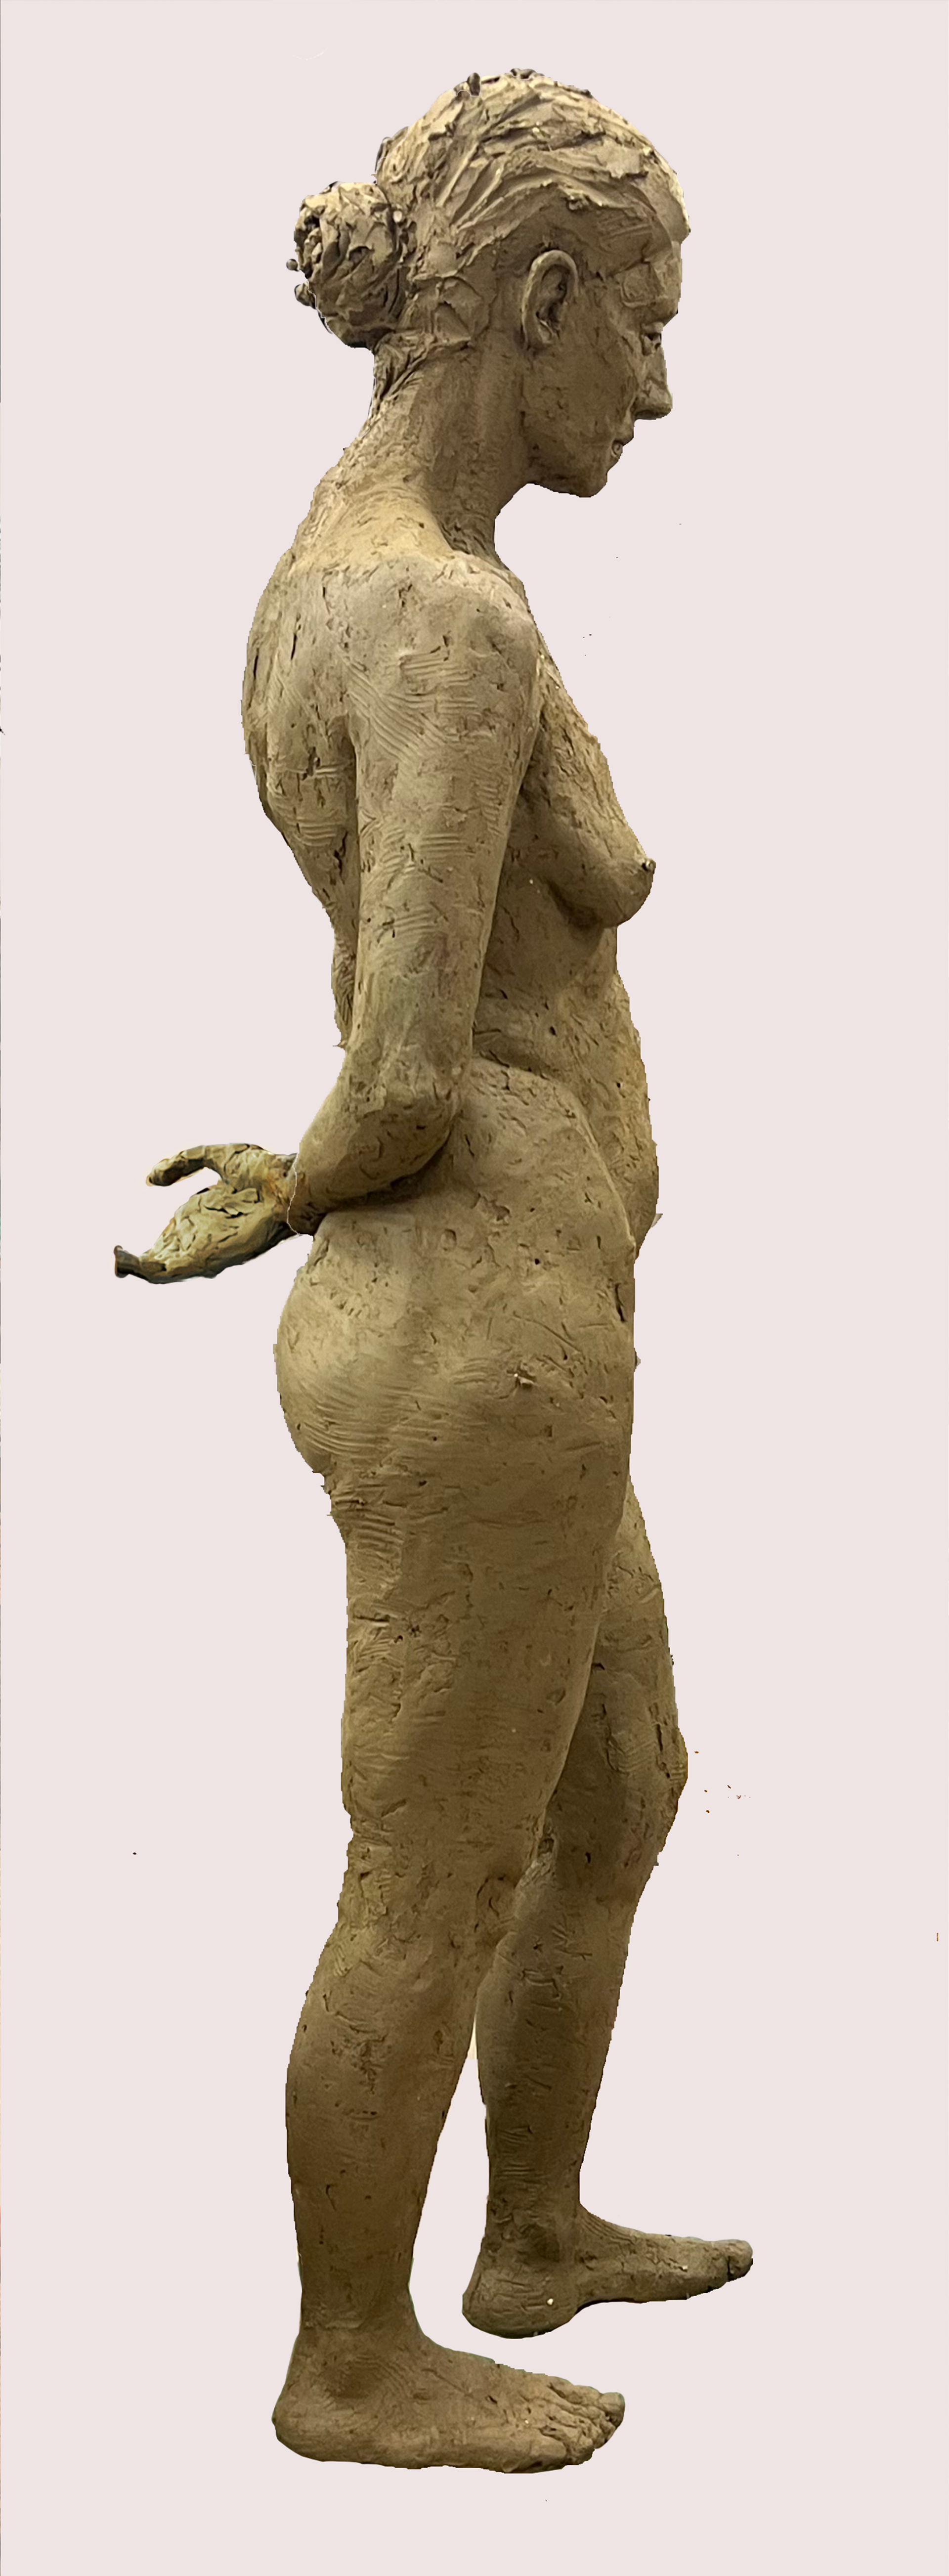  Pełnowymiarowe studium kobiecego aktu w klasycznej dla rzeźby pozienazywanej kontrapostem